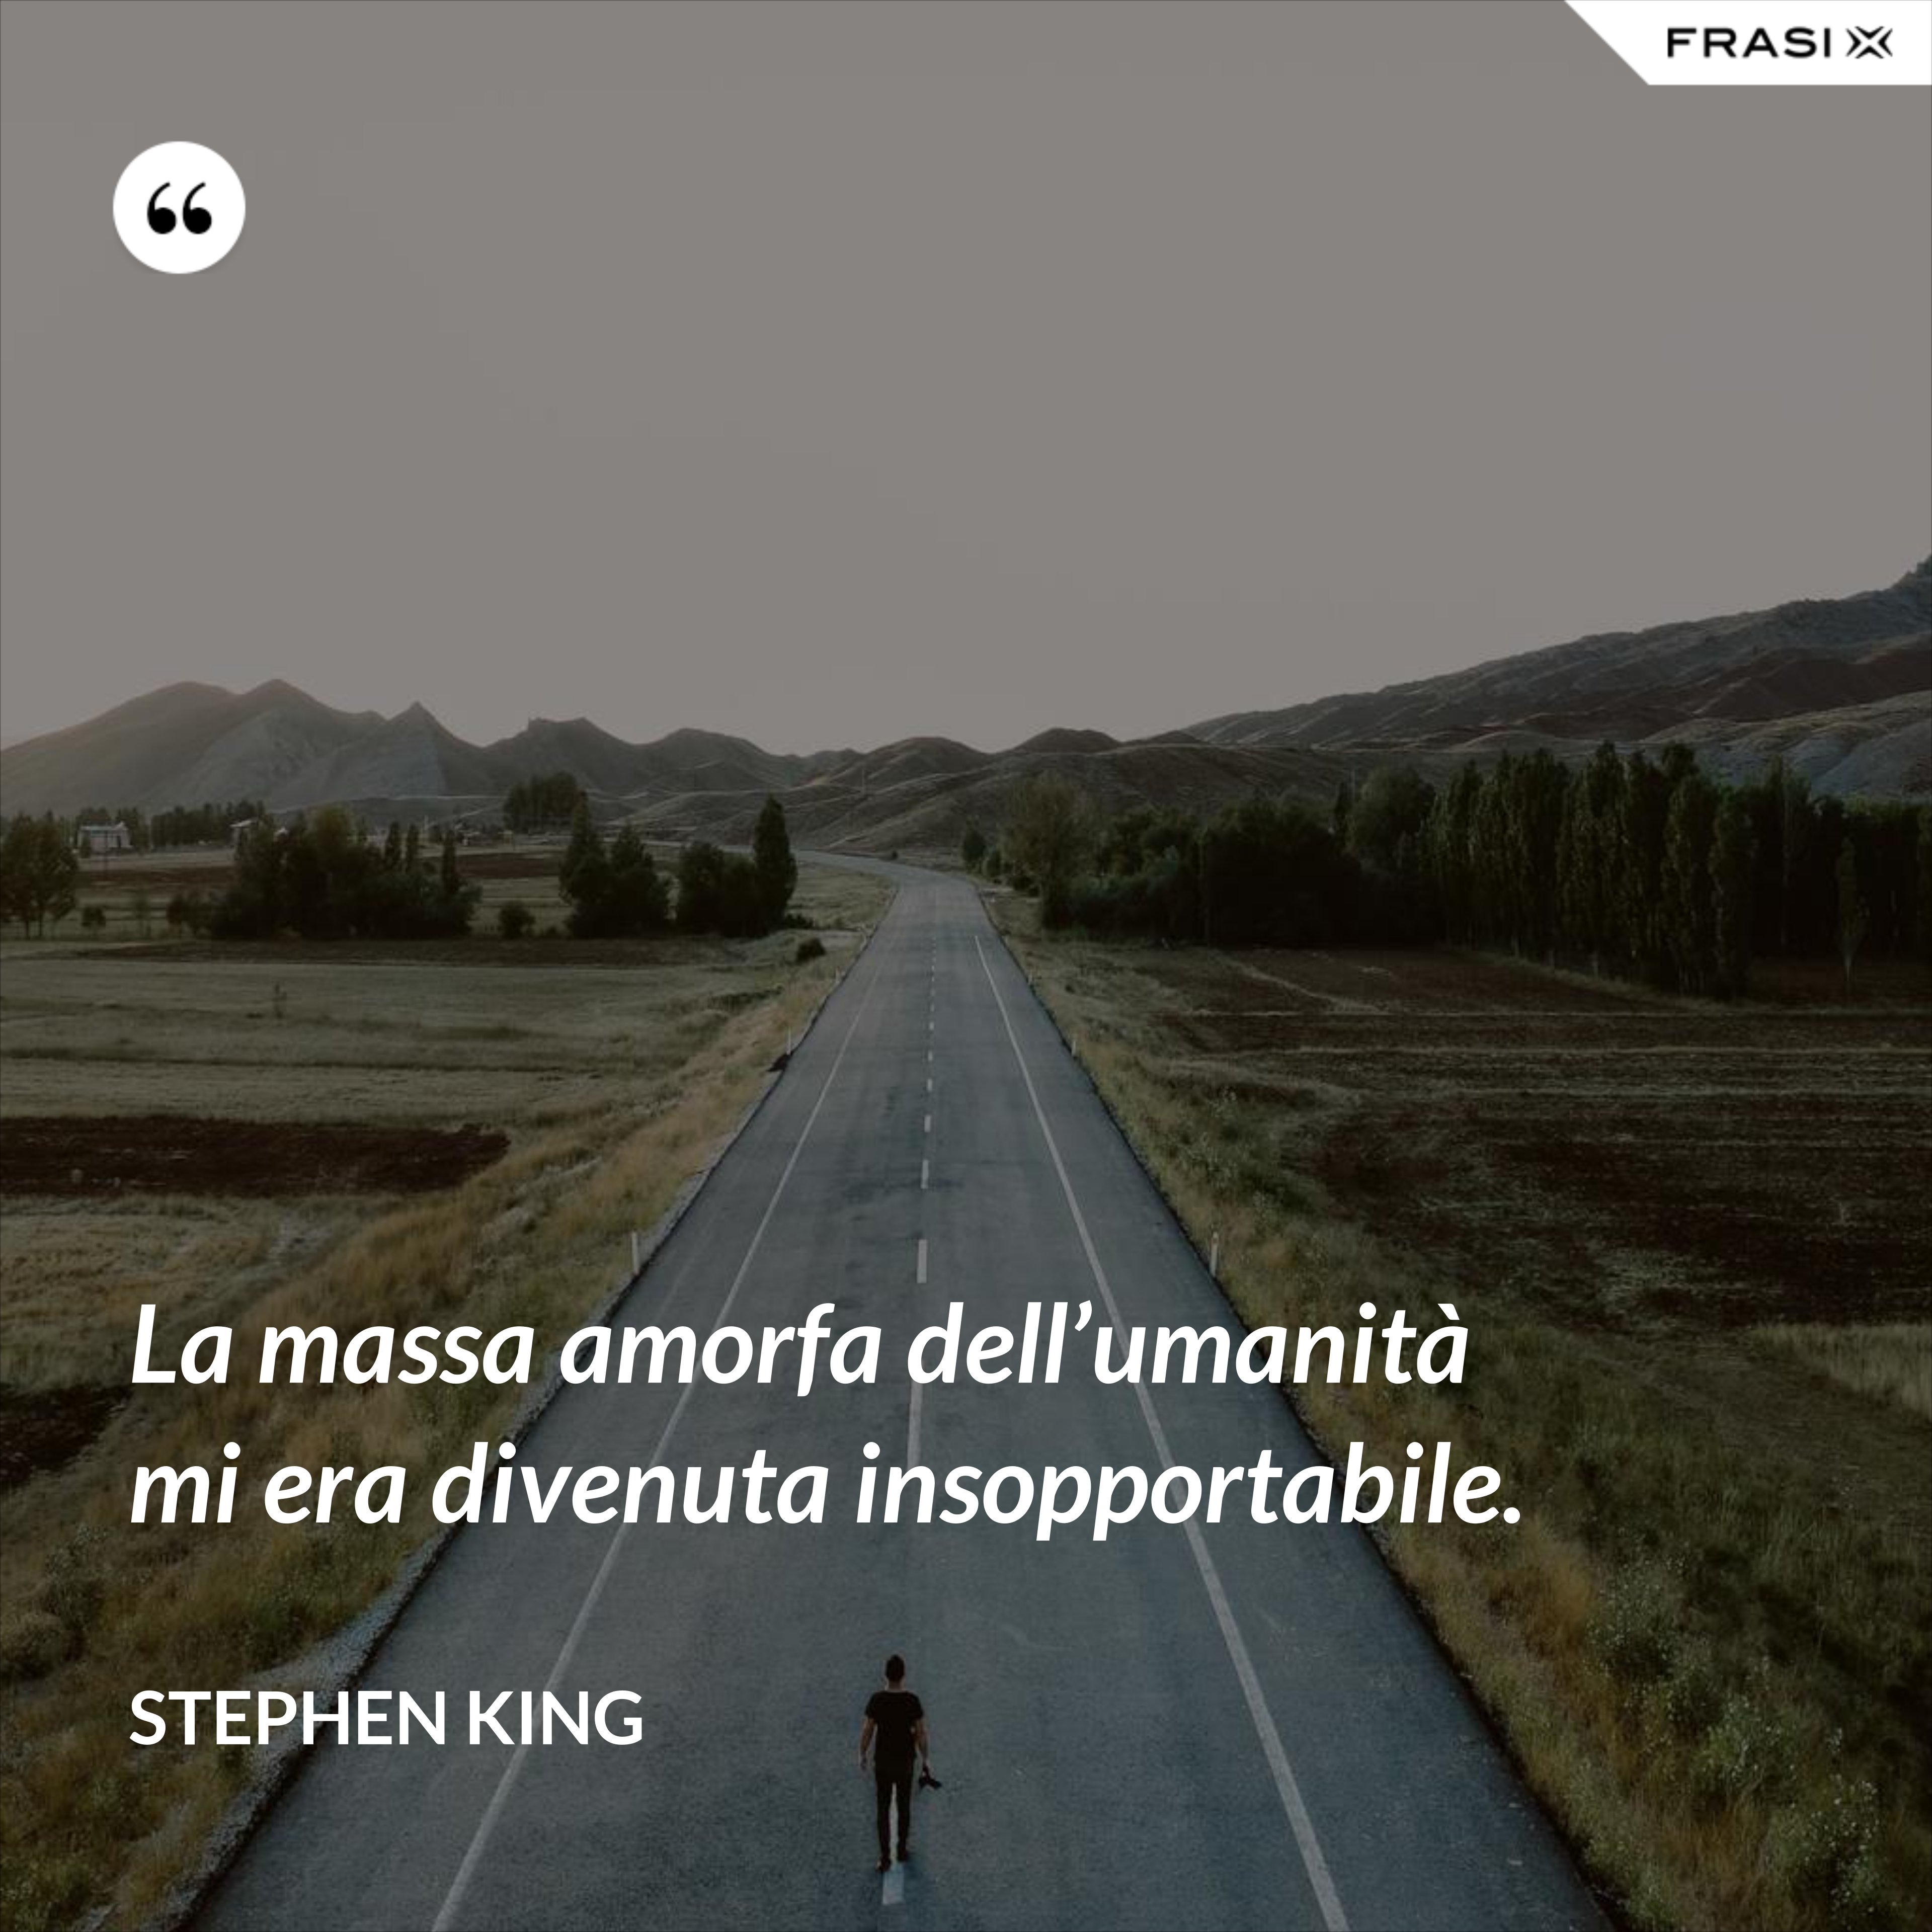 La massa amorfa dell’umanità mi era divenuta insopportabile. - Stephen King